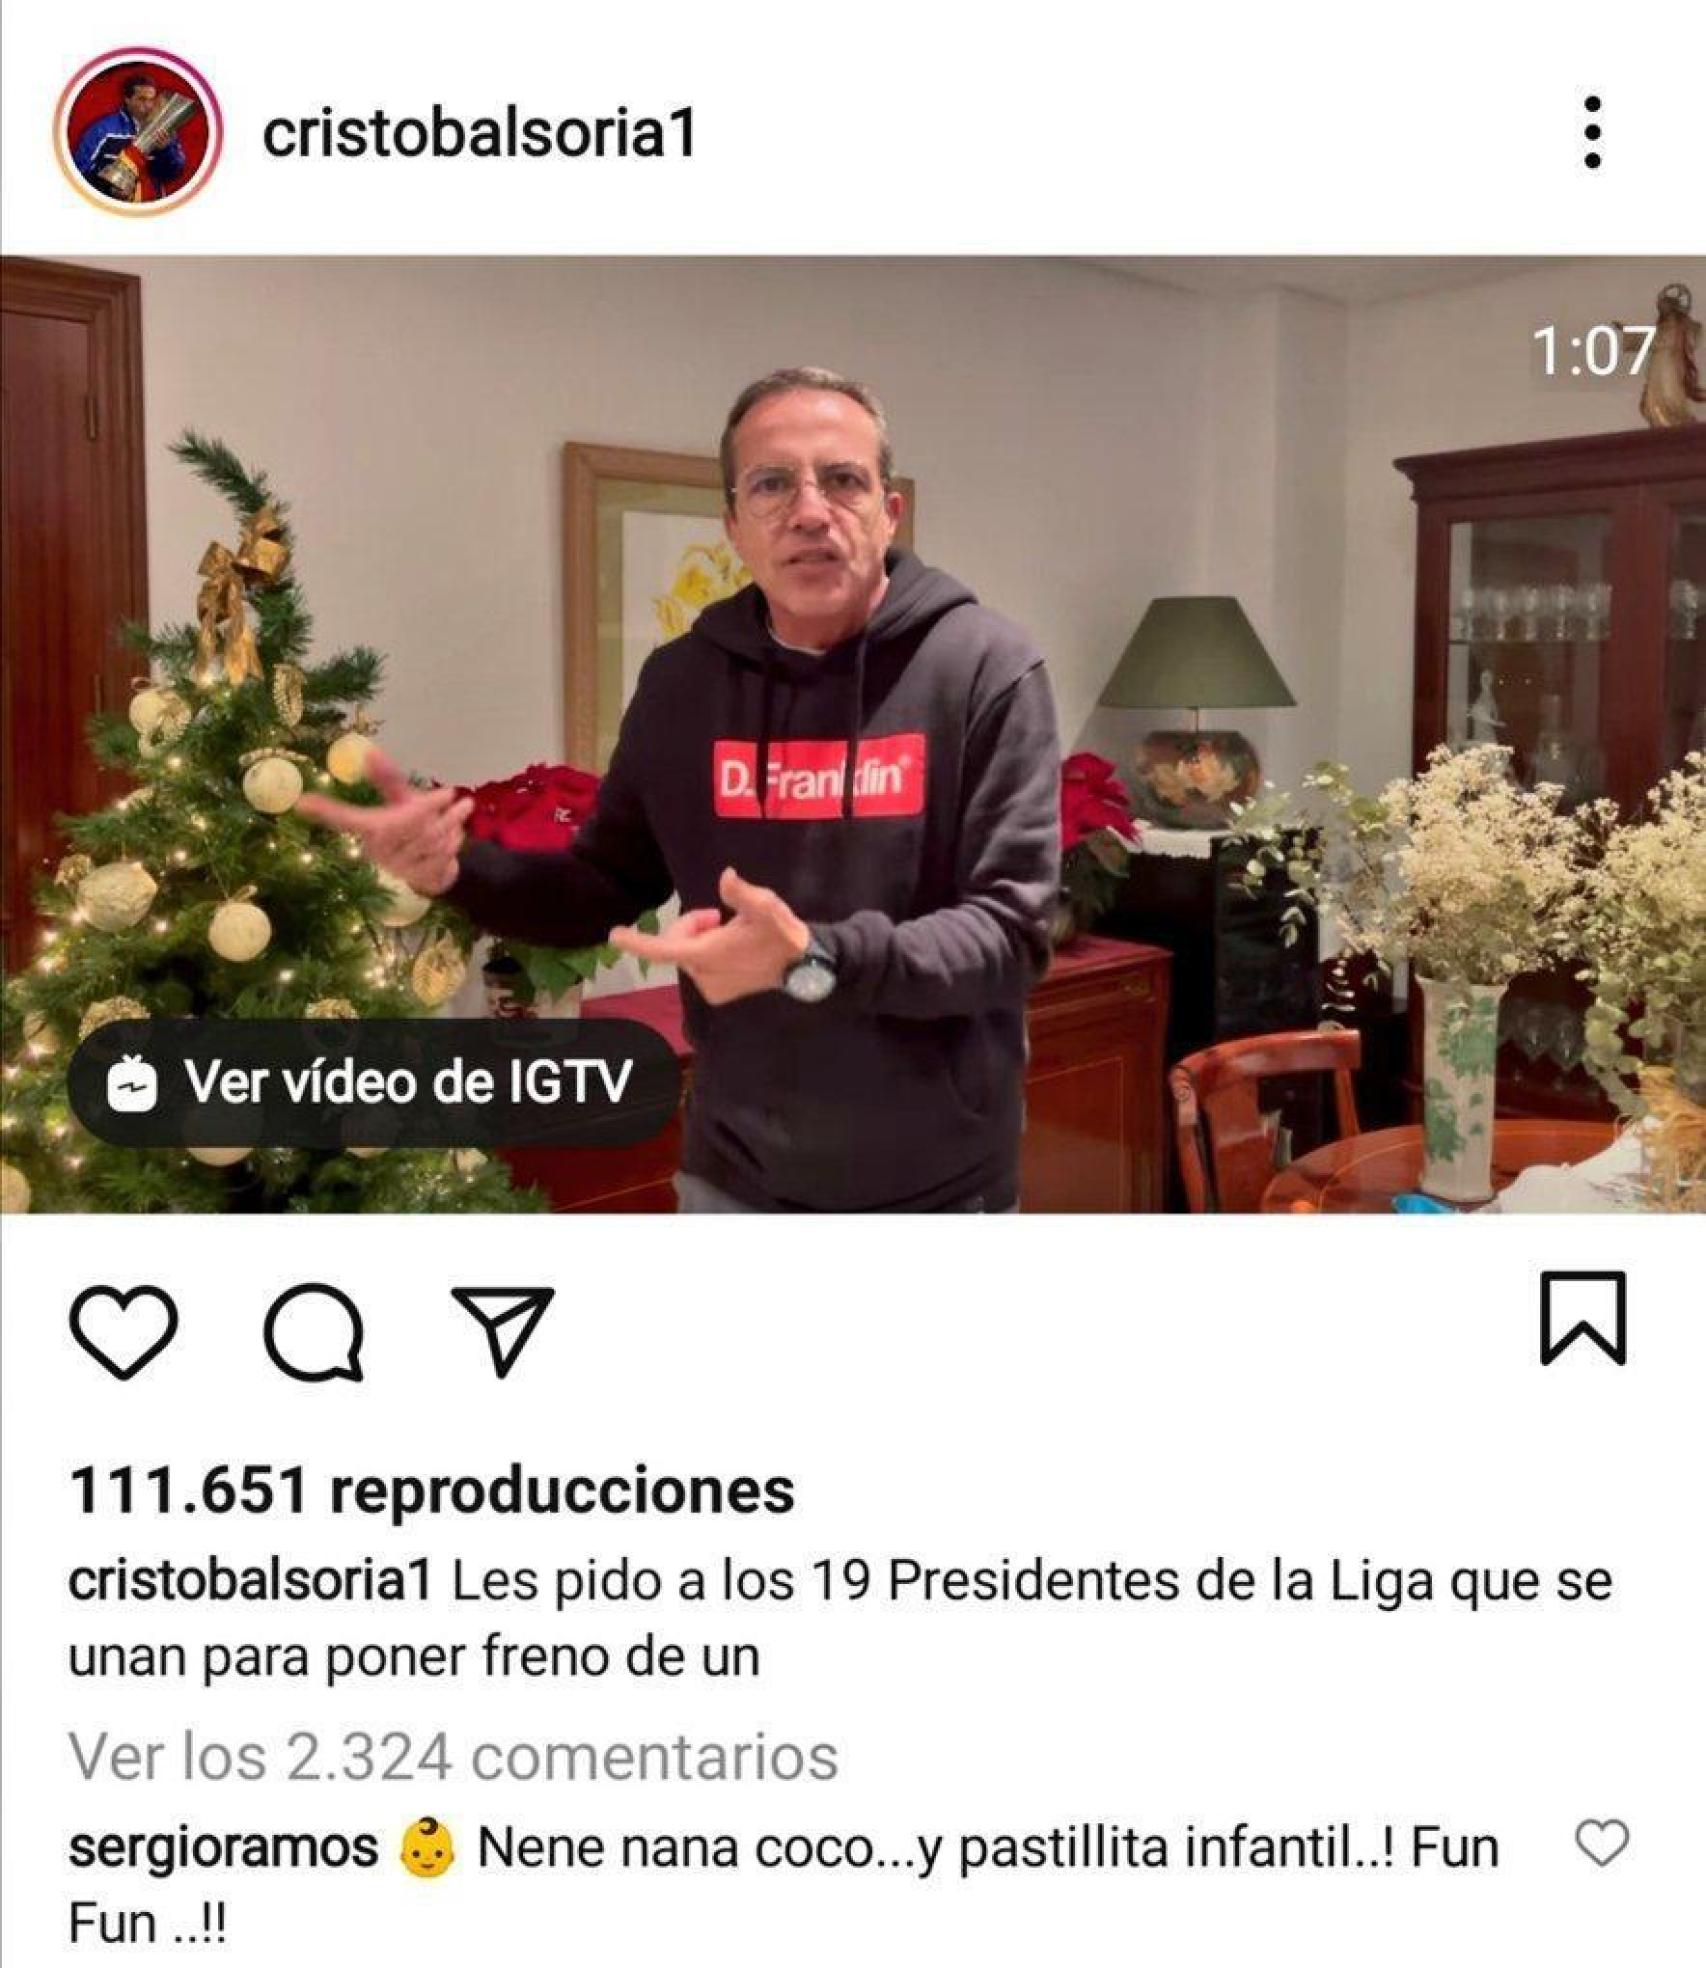 El troleo de Sergio Ramos a Cristóbal Soria